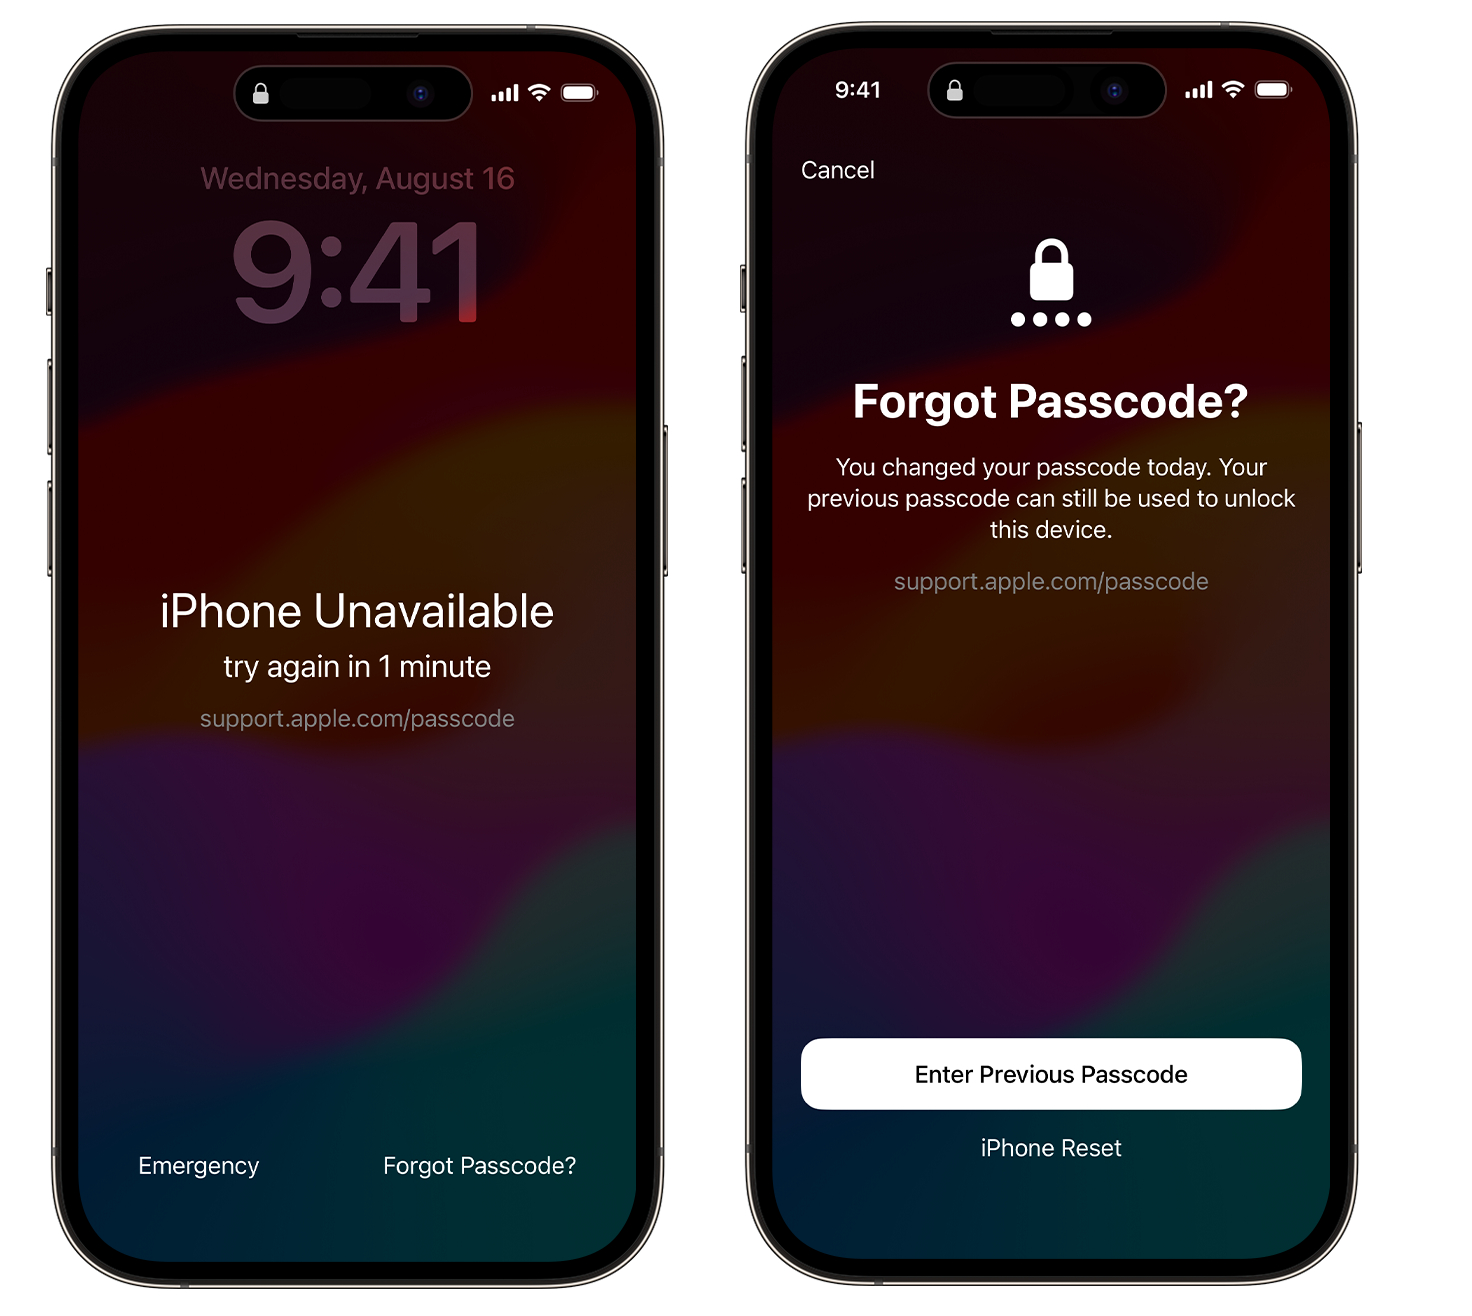 iphone忘記螢幕密碼怎麼辦，3種免電腦解鎖方法! - 已停用iPhone 連接iTunes - 敗家達人推薦